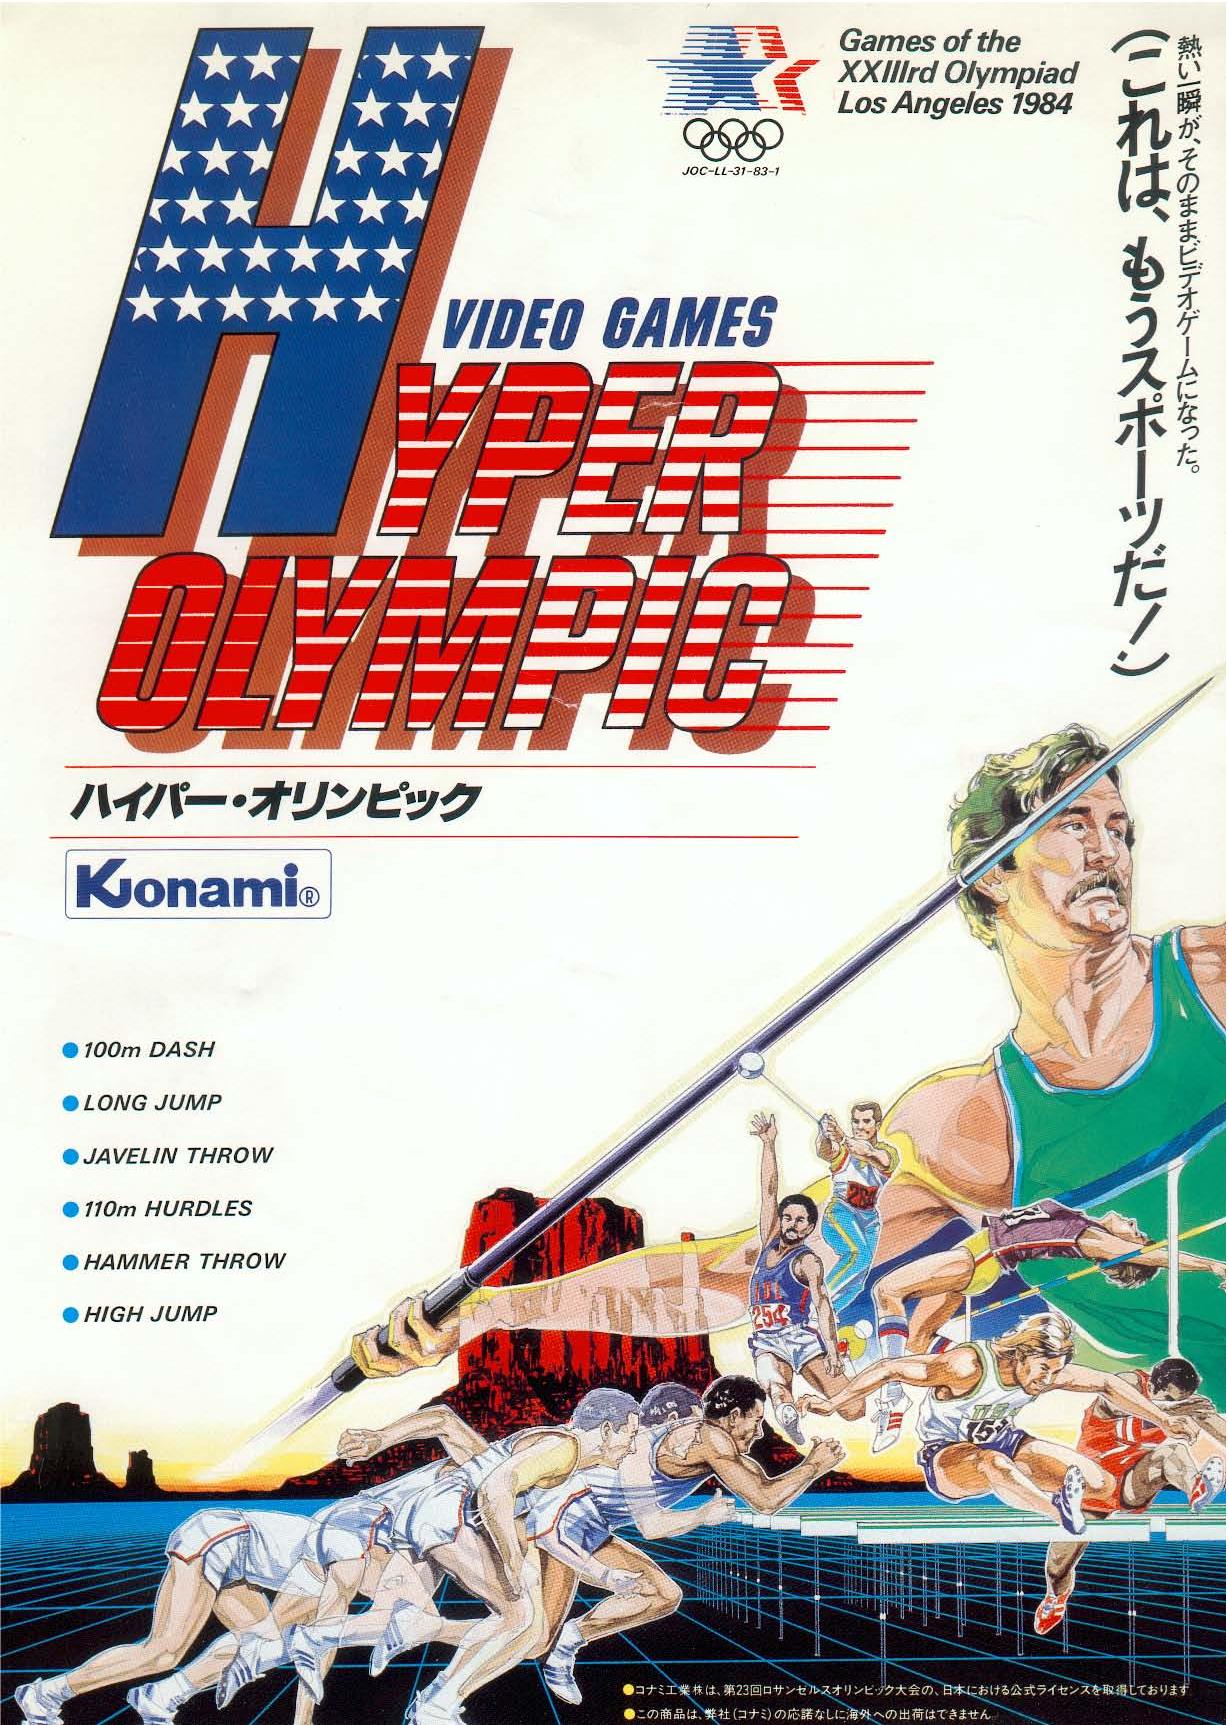 Hyper Olympics Manual